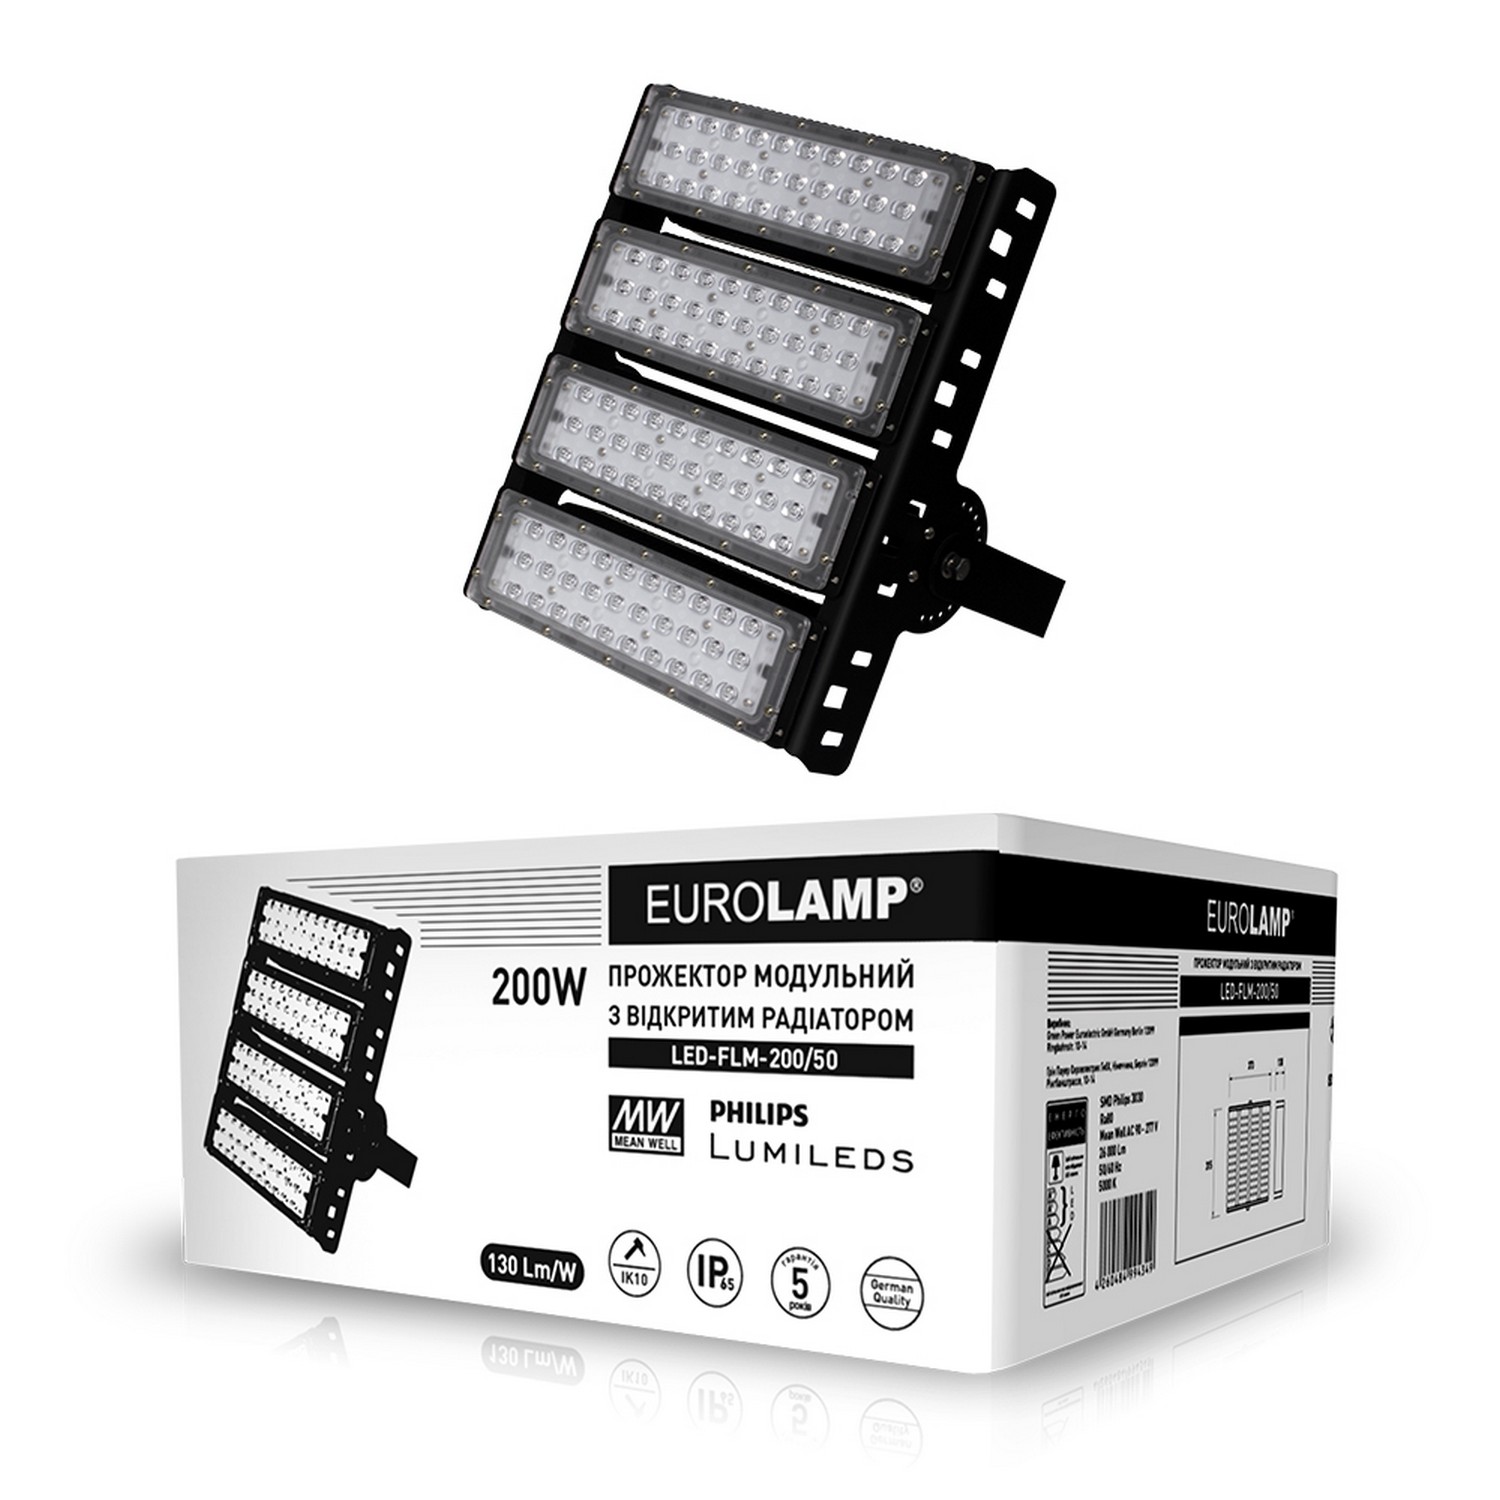 в продажу Прожектор Eurolamp LED модульний з відкритим радіатором 200W 5000K - фото 3